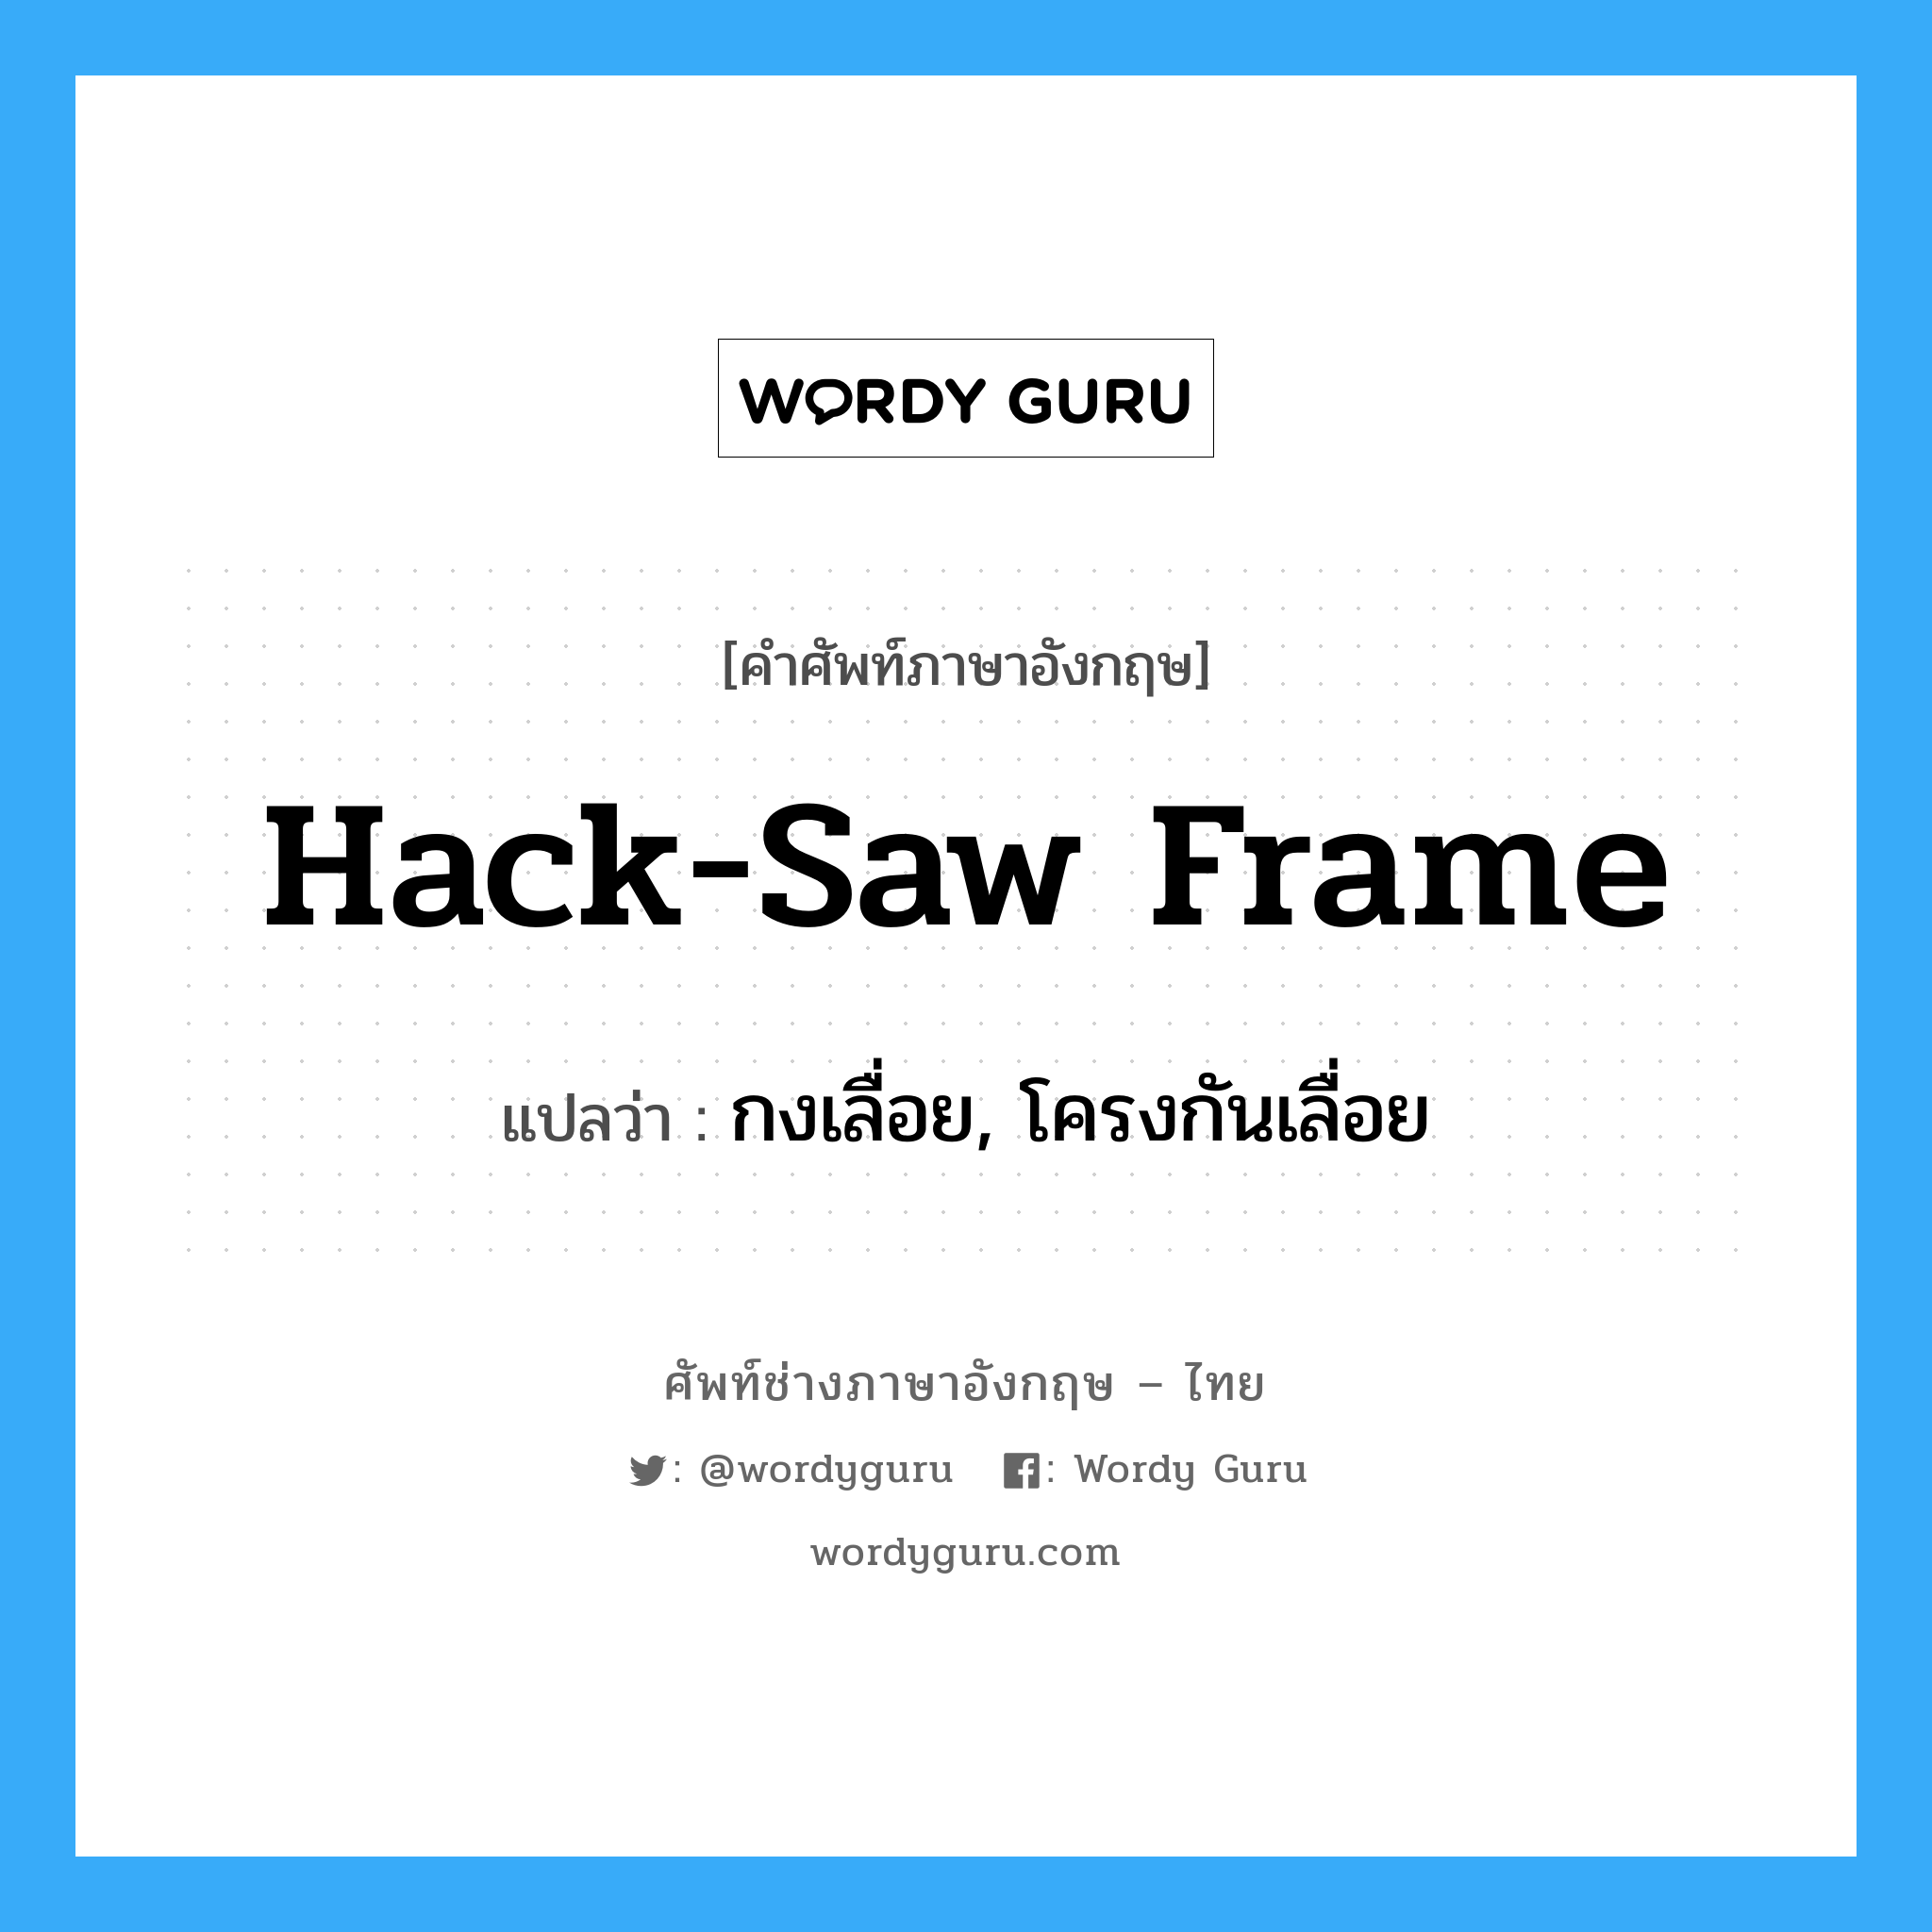 hack-saw frame แปลว่า?, คำศัพท์ช่างภาษาอังกฤษ - ไทย hack-saw frame คำศัพท์ภาษาอังกฤษ hack-saw frame แปลว่า กงเลื่อย, โครงกันเลื่อย